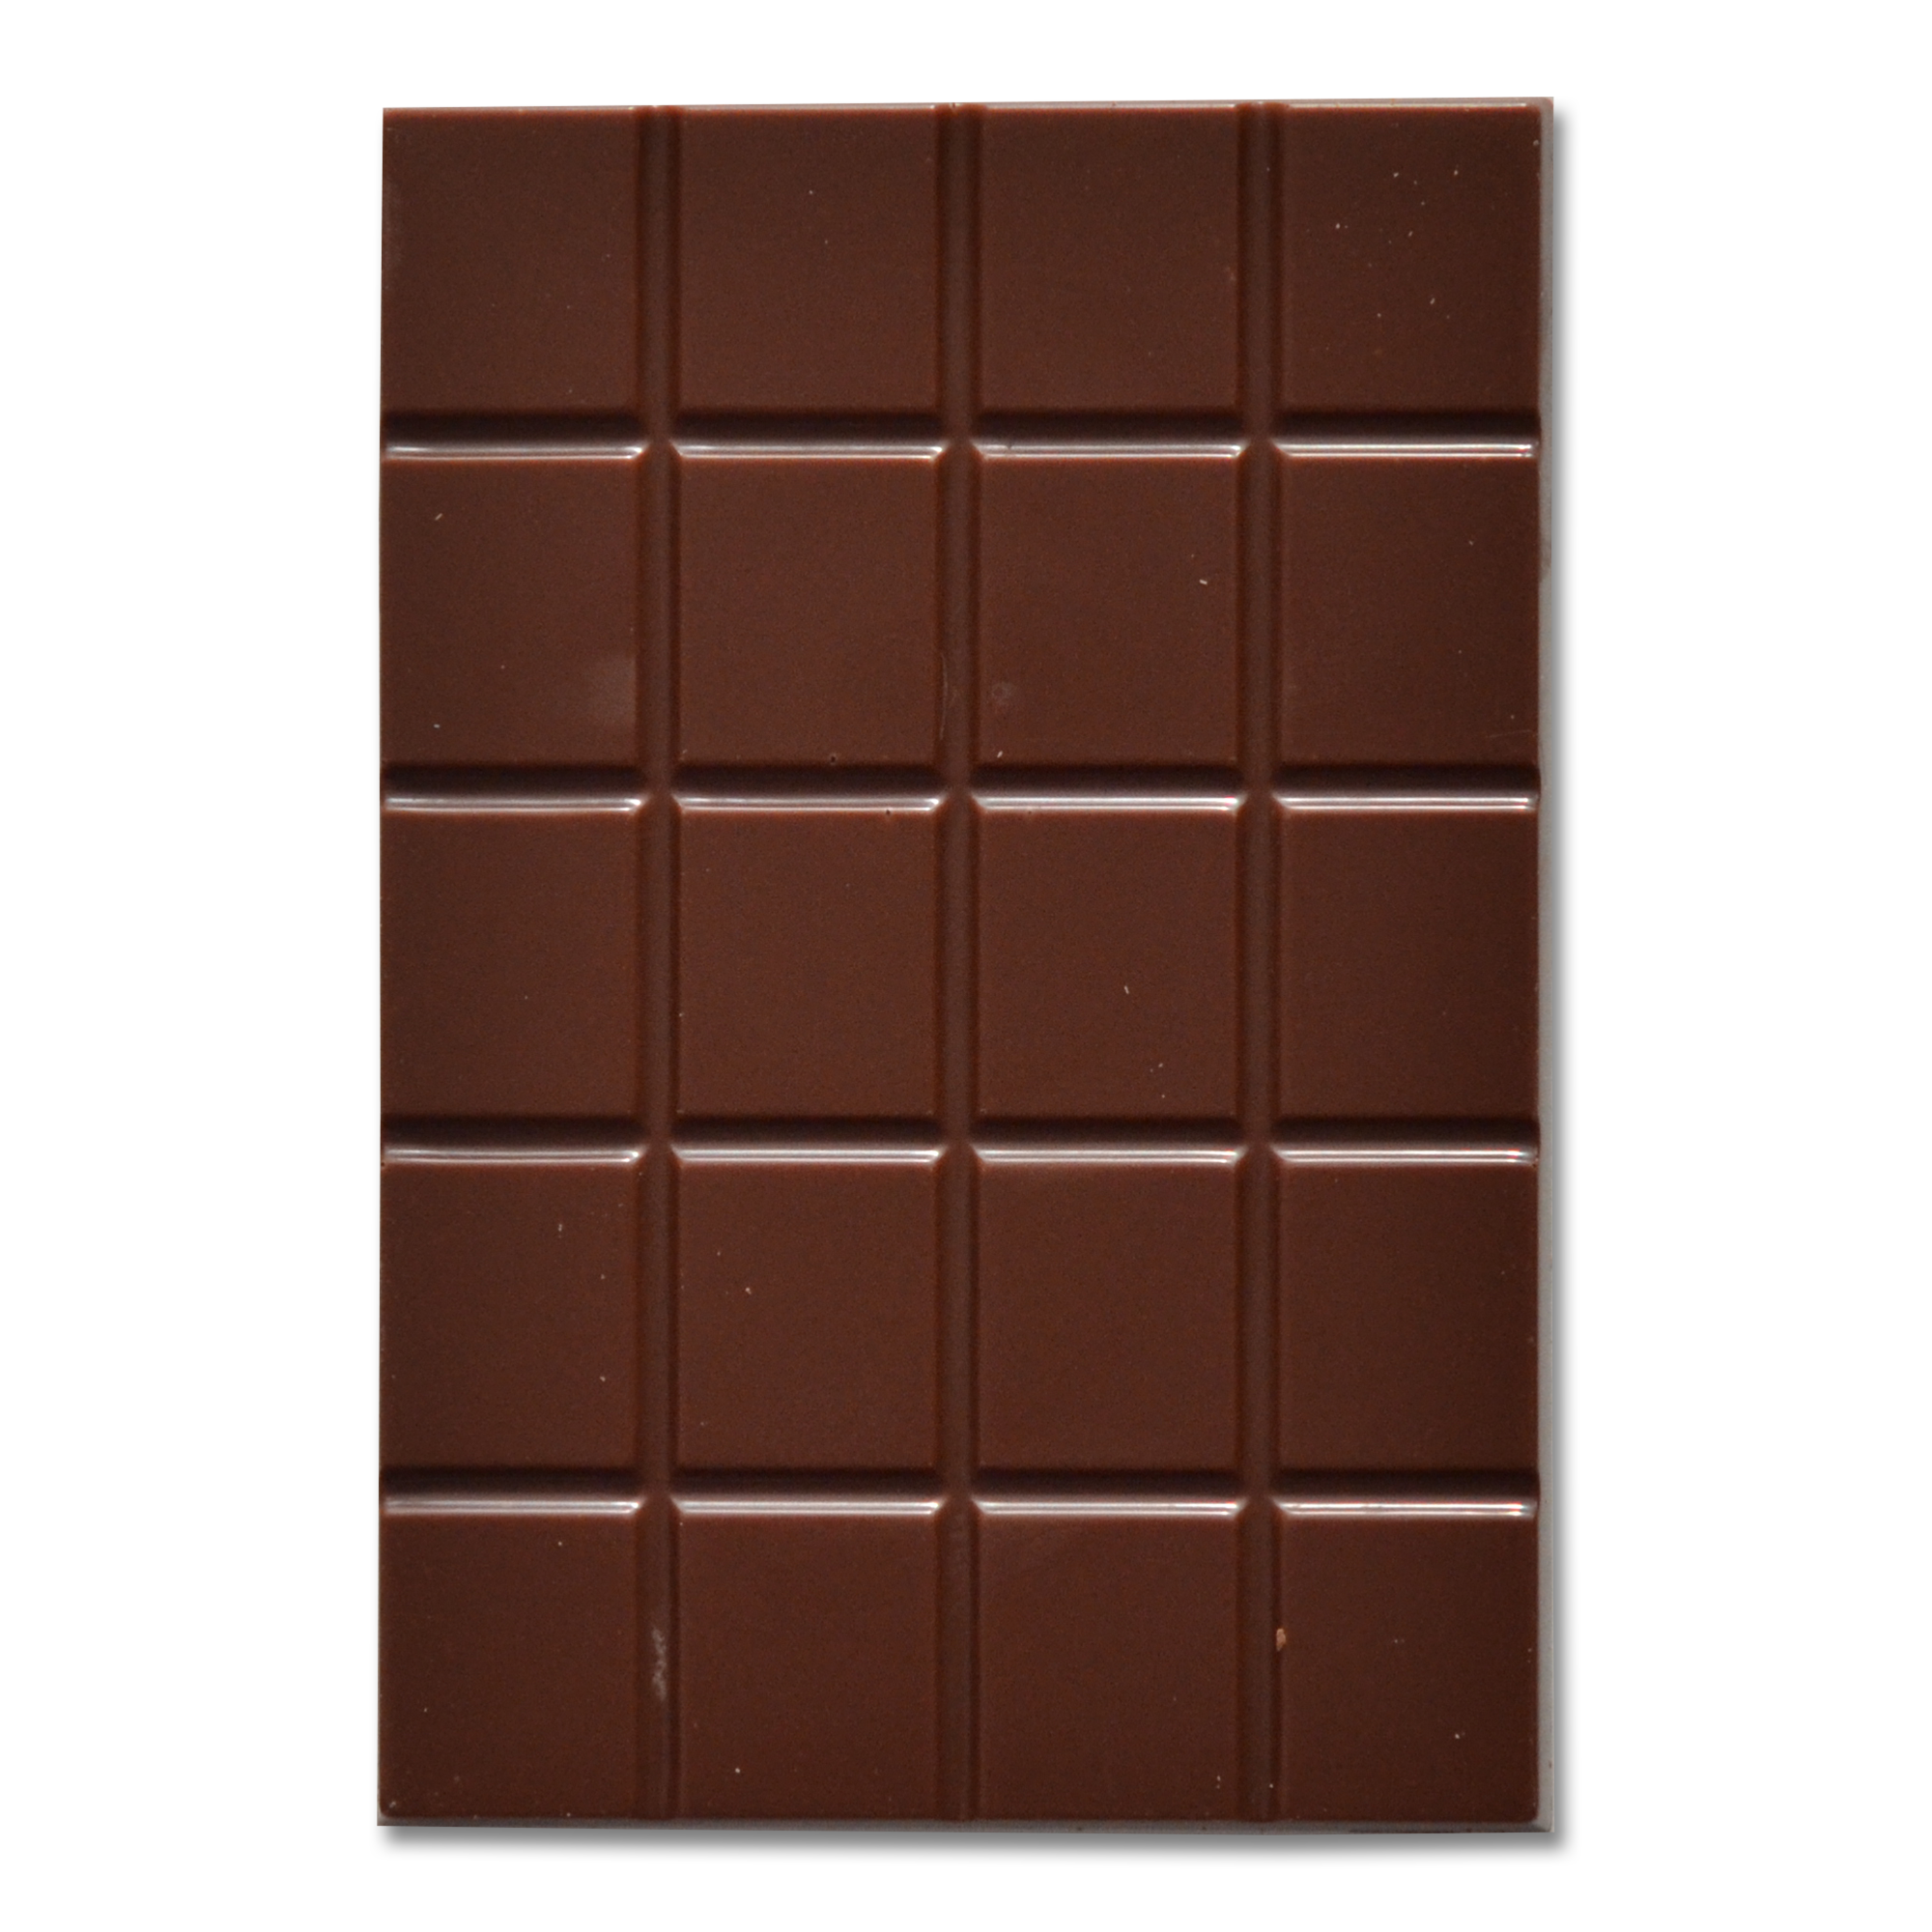 Standout Chocolate Guatemala Lachuá 70%